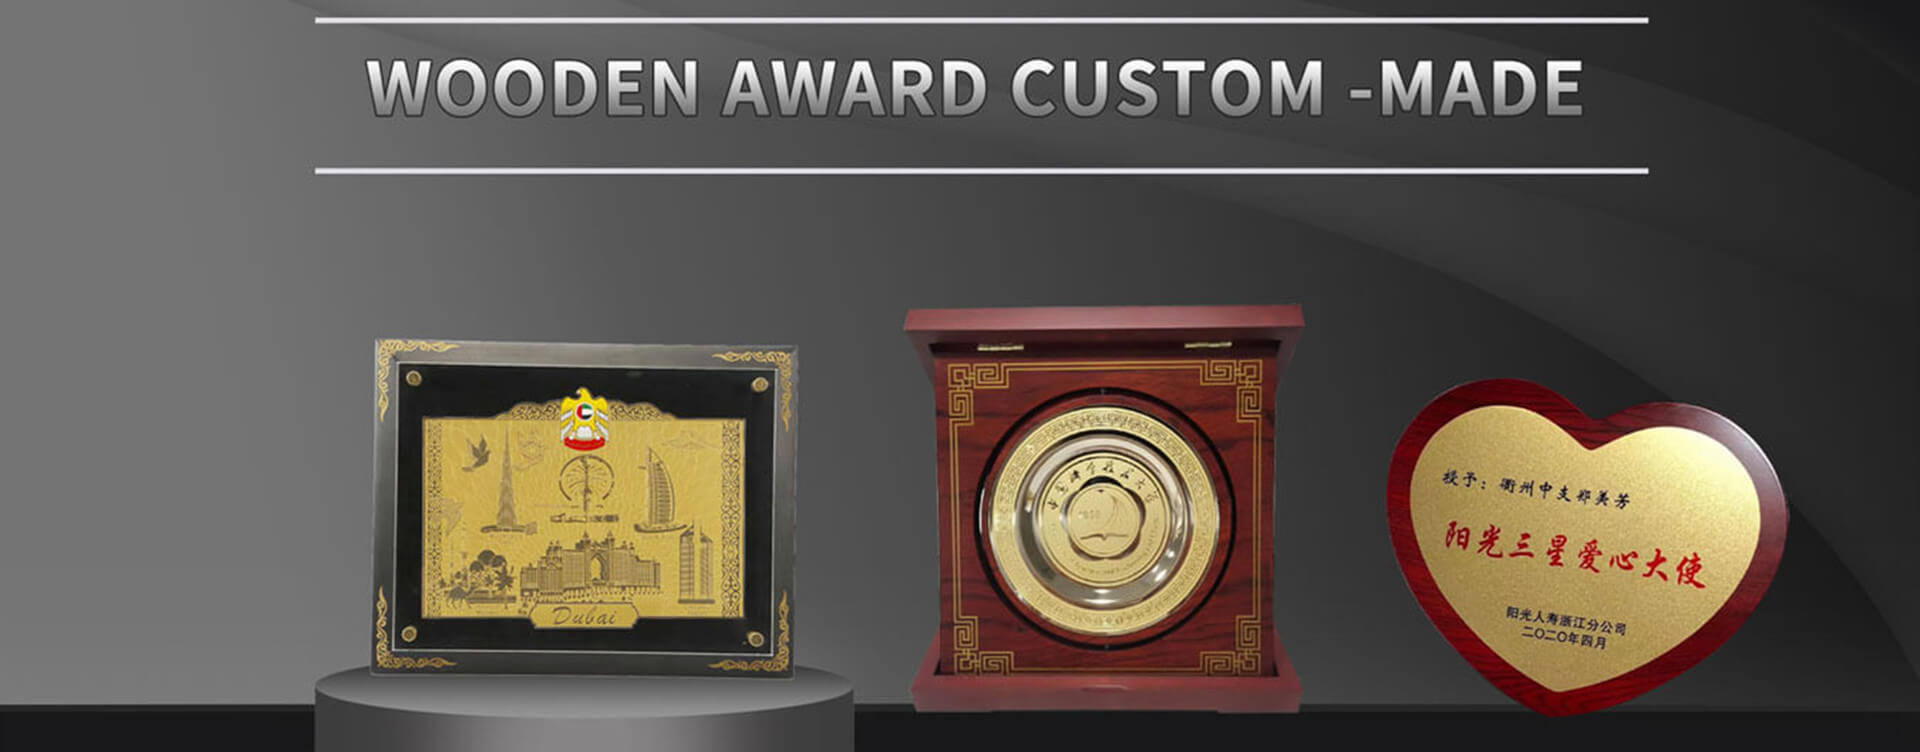 custom wooden awards